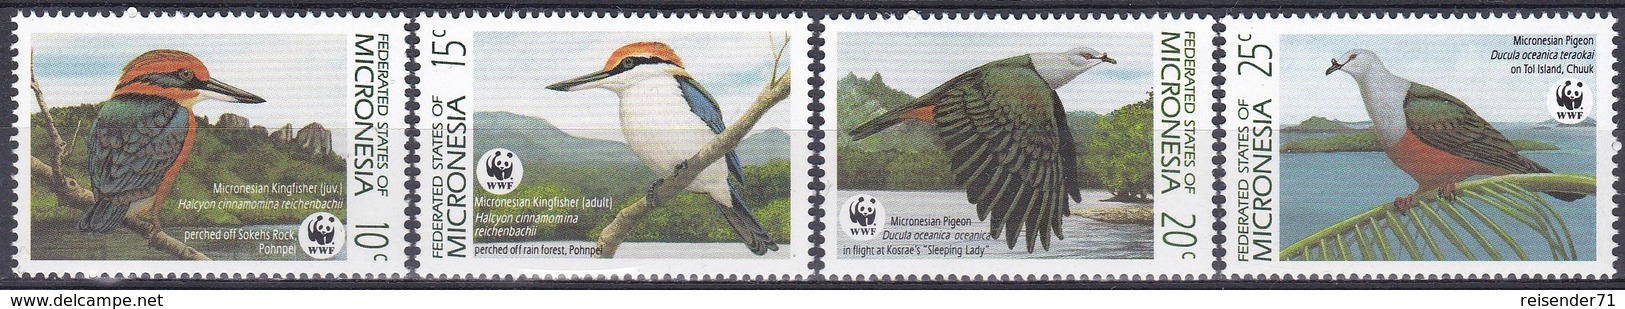 Mikronesien Micronesia 1990 Tiere Fauna Animals Vögel Birds Oiseaux Aves Uccelli Tauben Doves WWF, Mi. 174-7 ** - Mikronesien